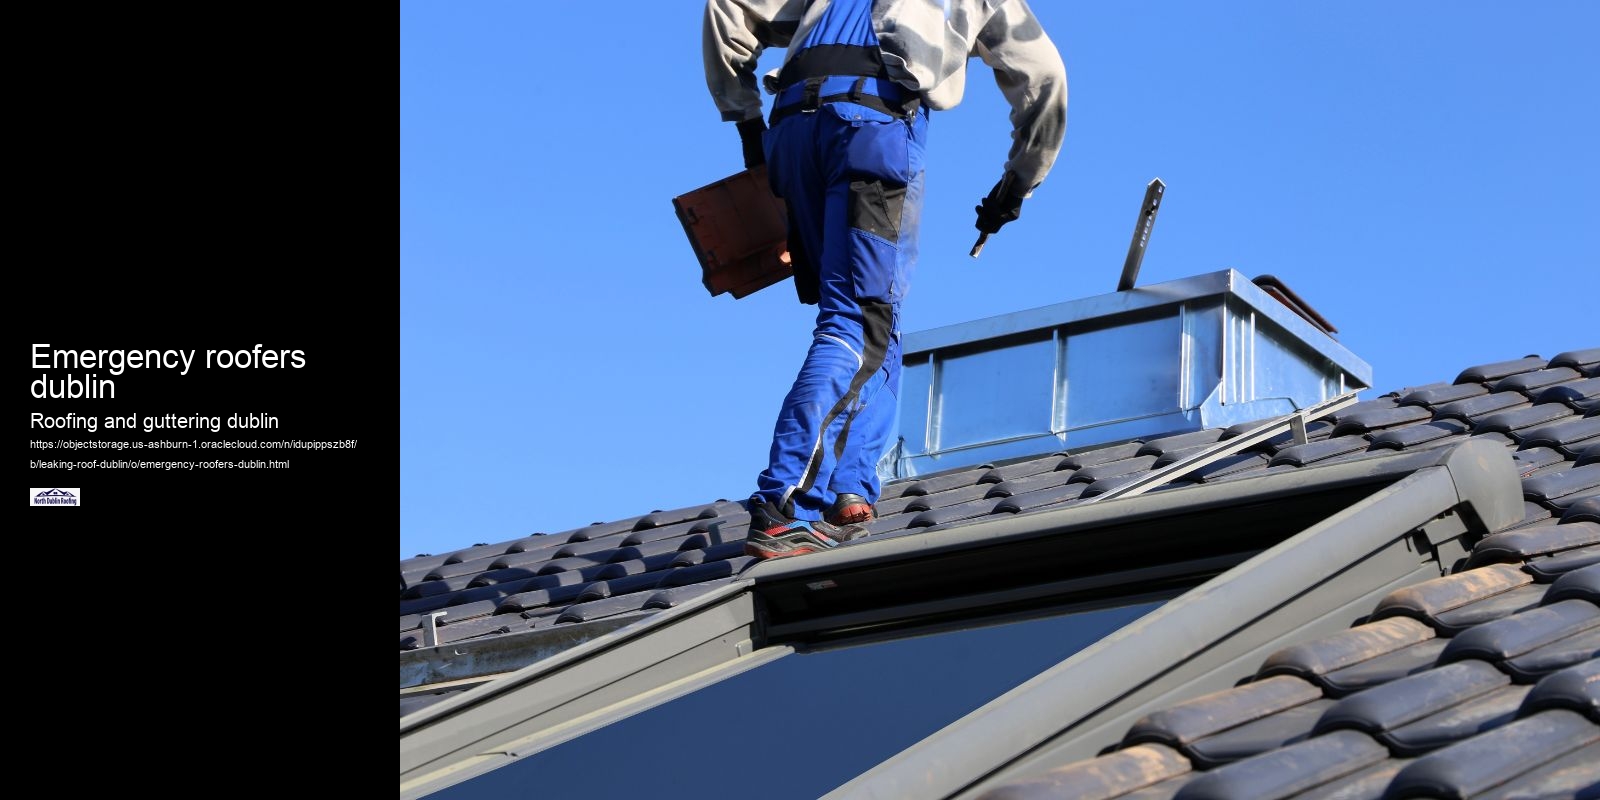 Emergency roofers dublin